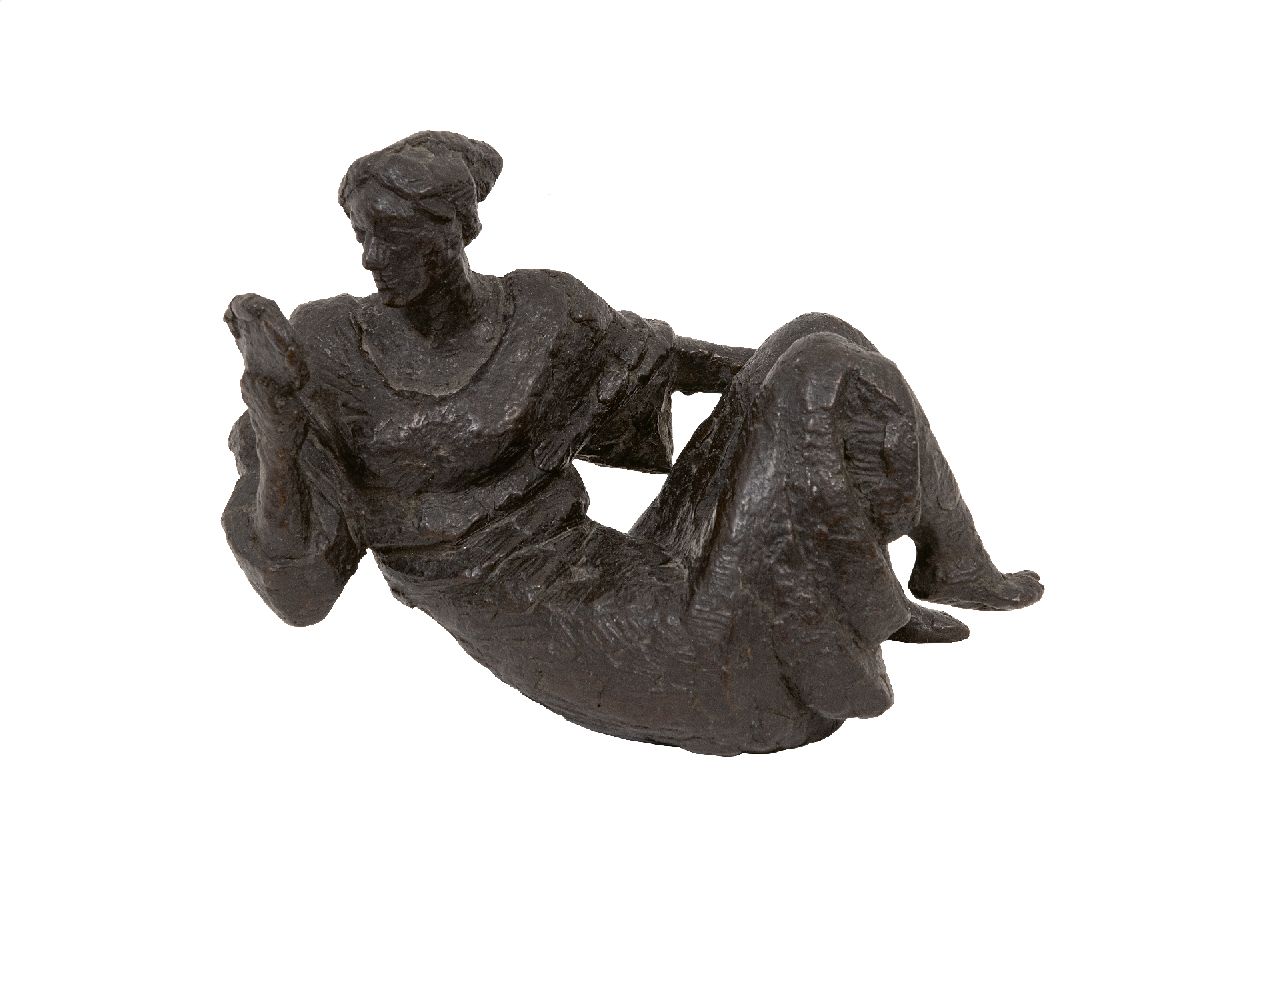 Onbekend Duitse School  | Onbekend | Skulpturen und Objekte zum Verkauf angeboten | Liegende Dame mit Handspiegel, Bronze 14,0 x 20,0 cm